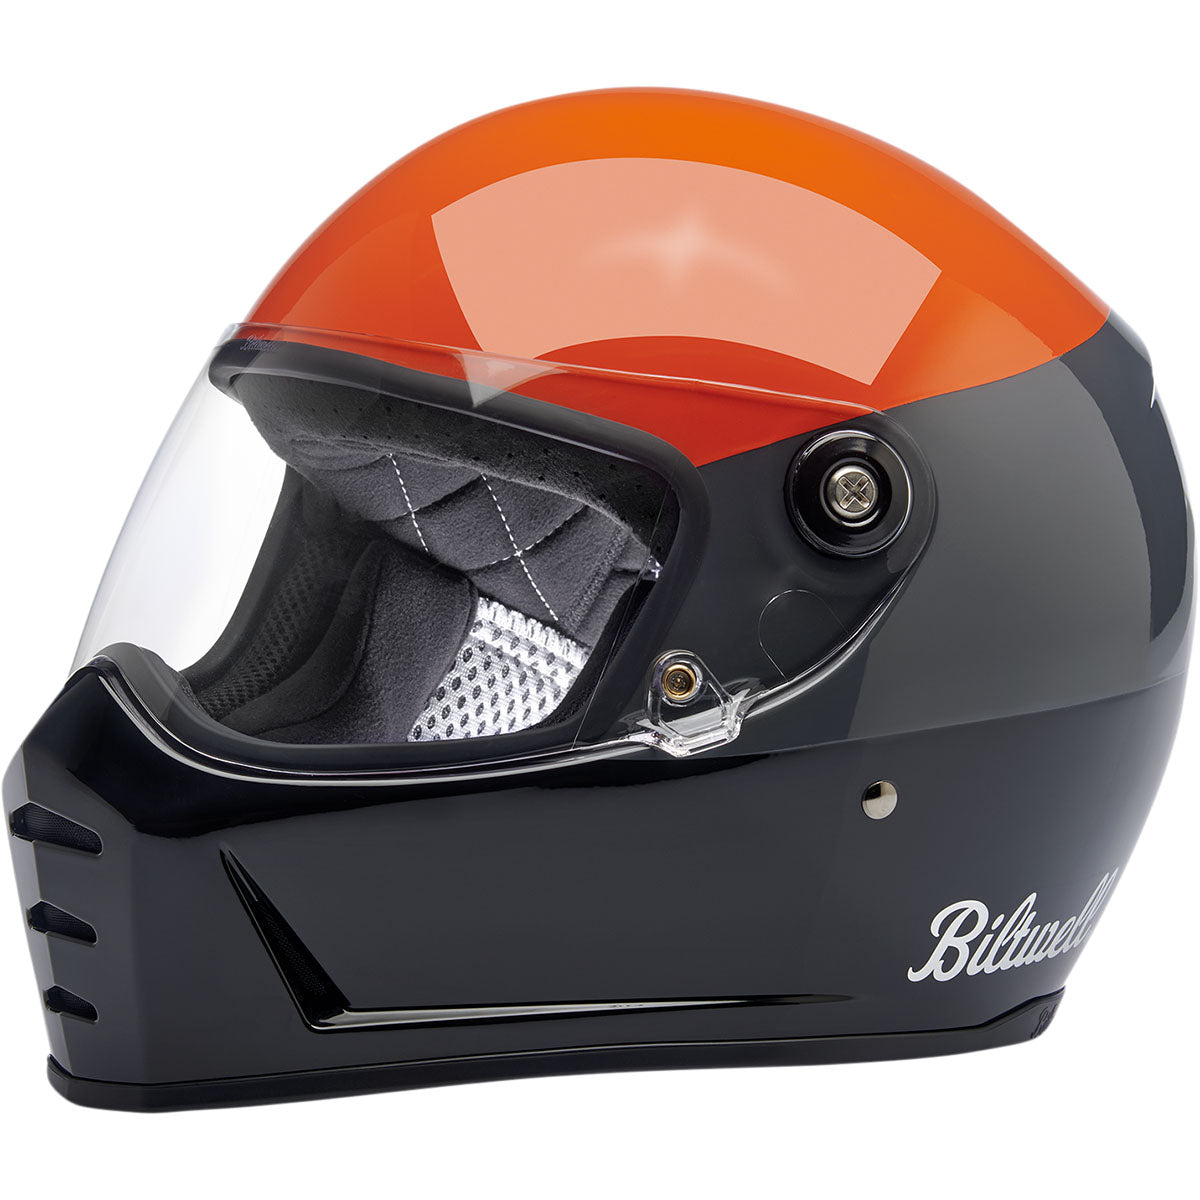 Biltwell Lane Splitter Helmet - Gloss Podium Orange/Gray/Black